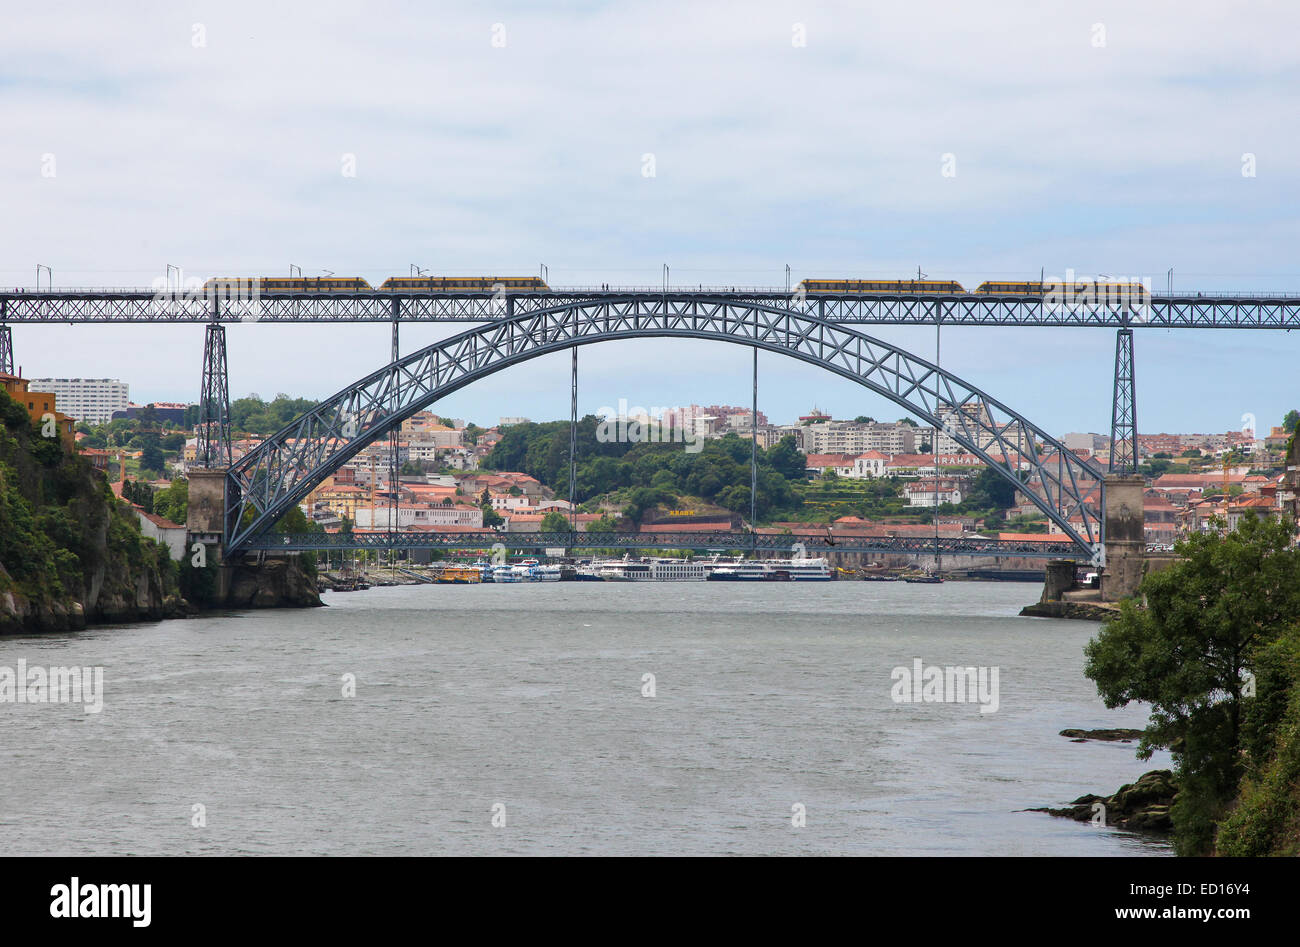 Railway Bridge over the River Douro in Porto, Portugal. Stock Photo